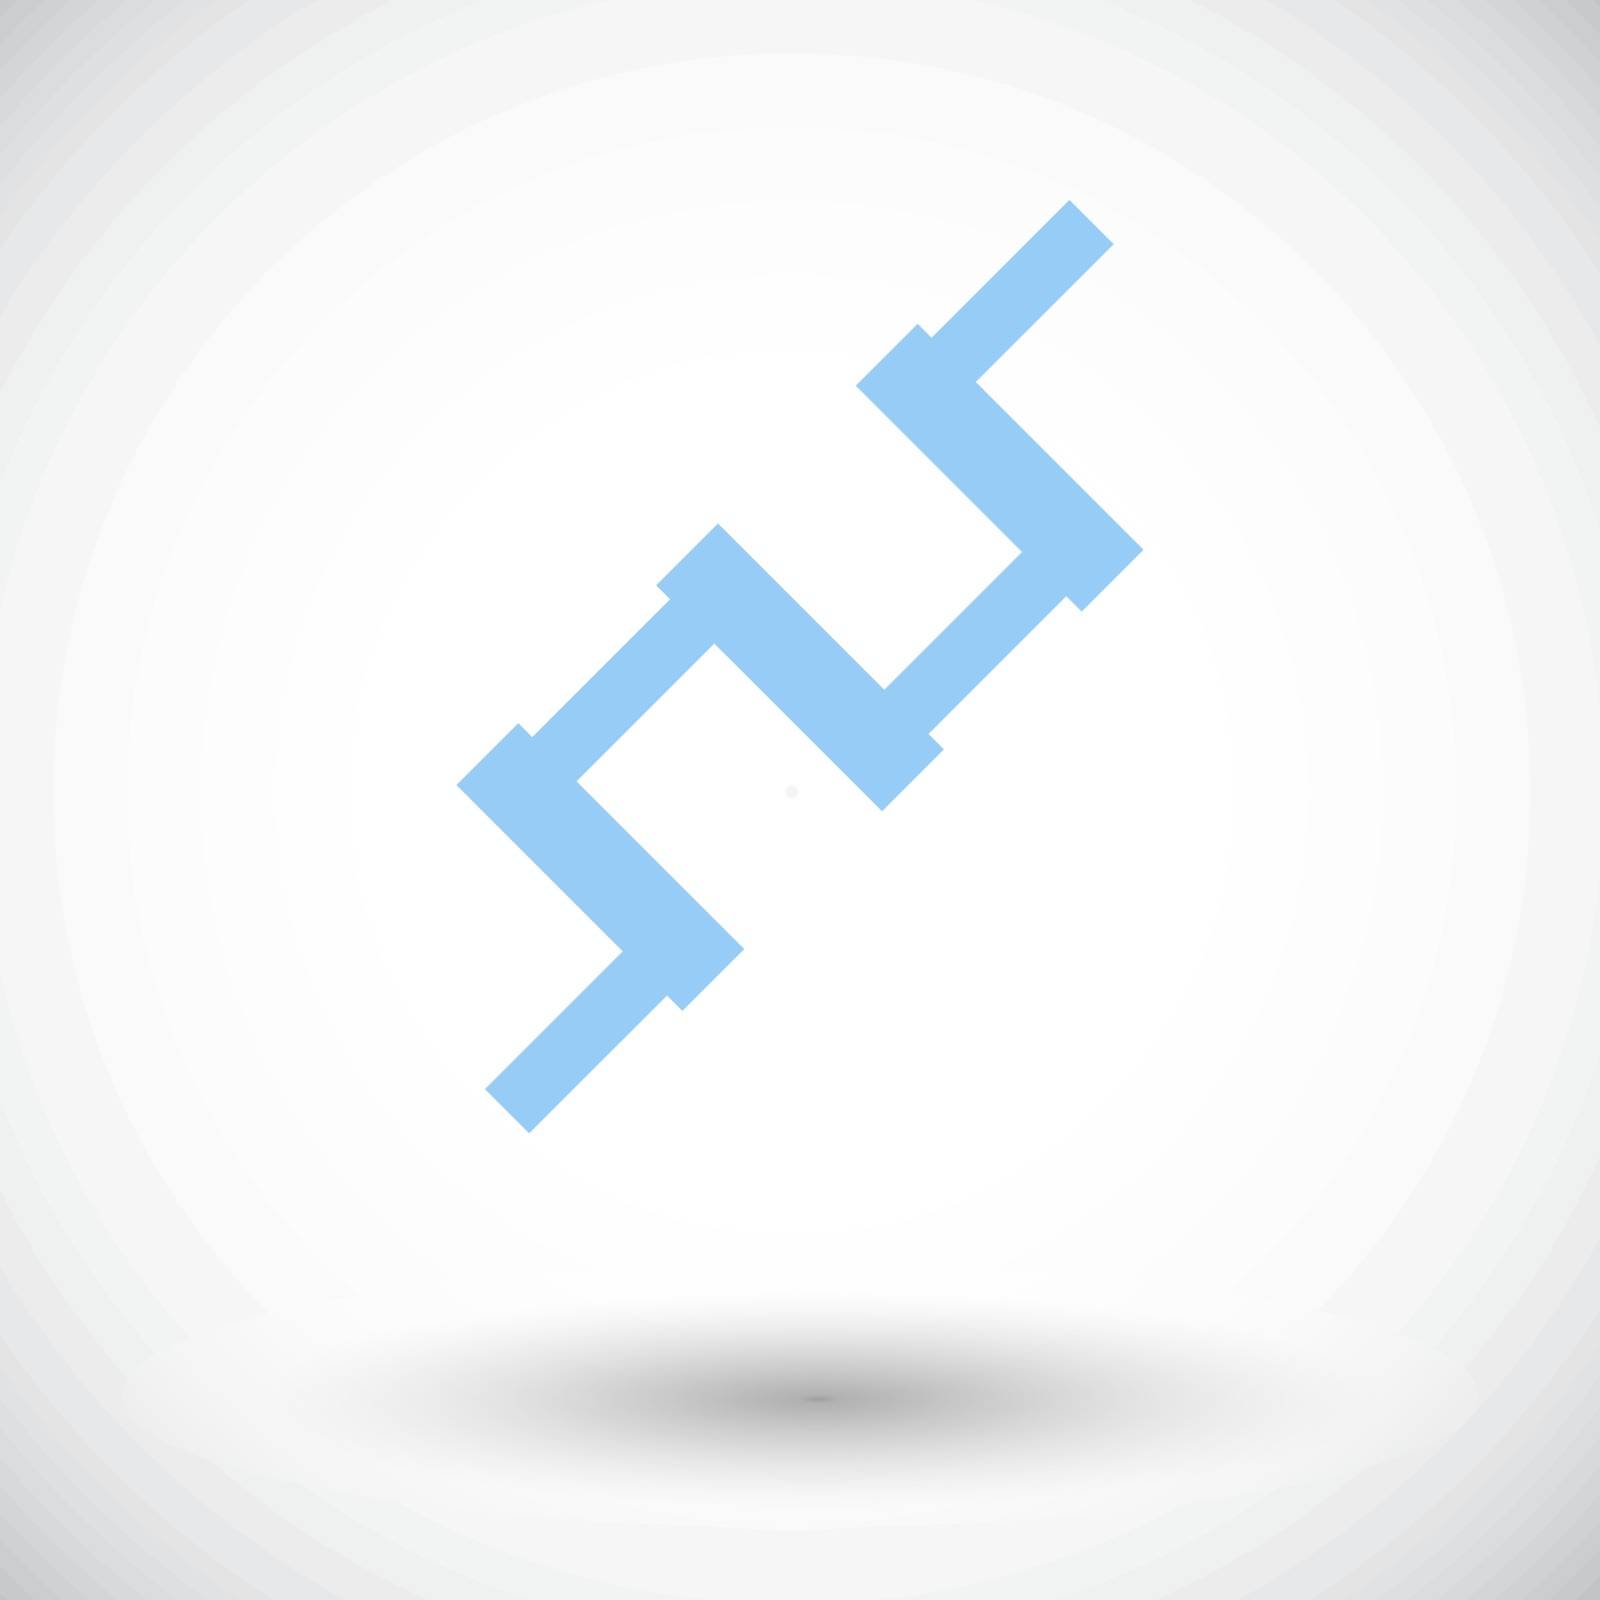 Crankshaft. Single flat icon on white background. Vector illustration.